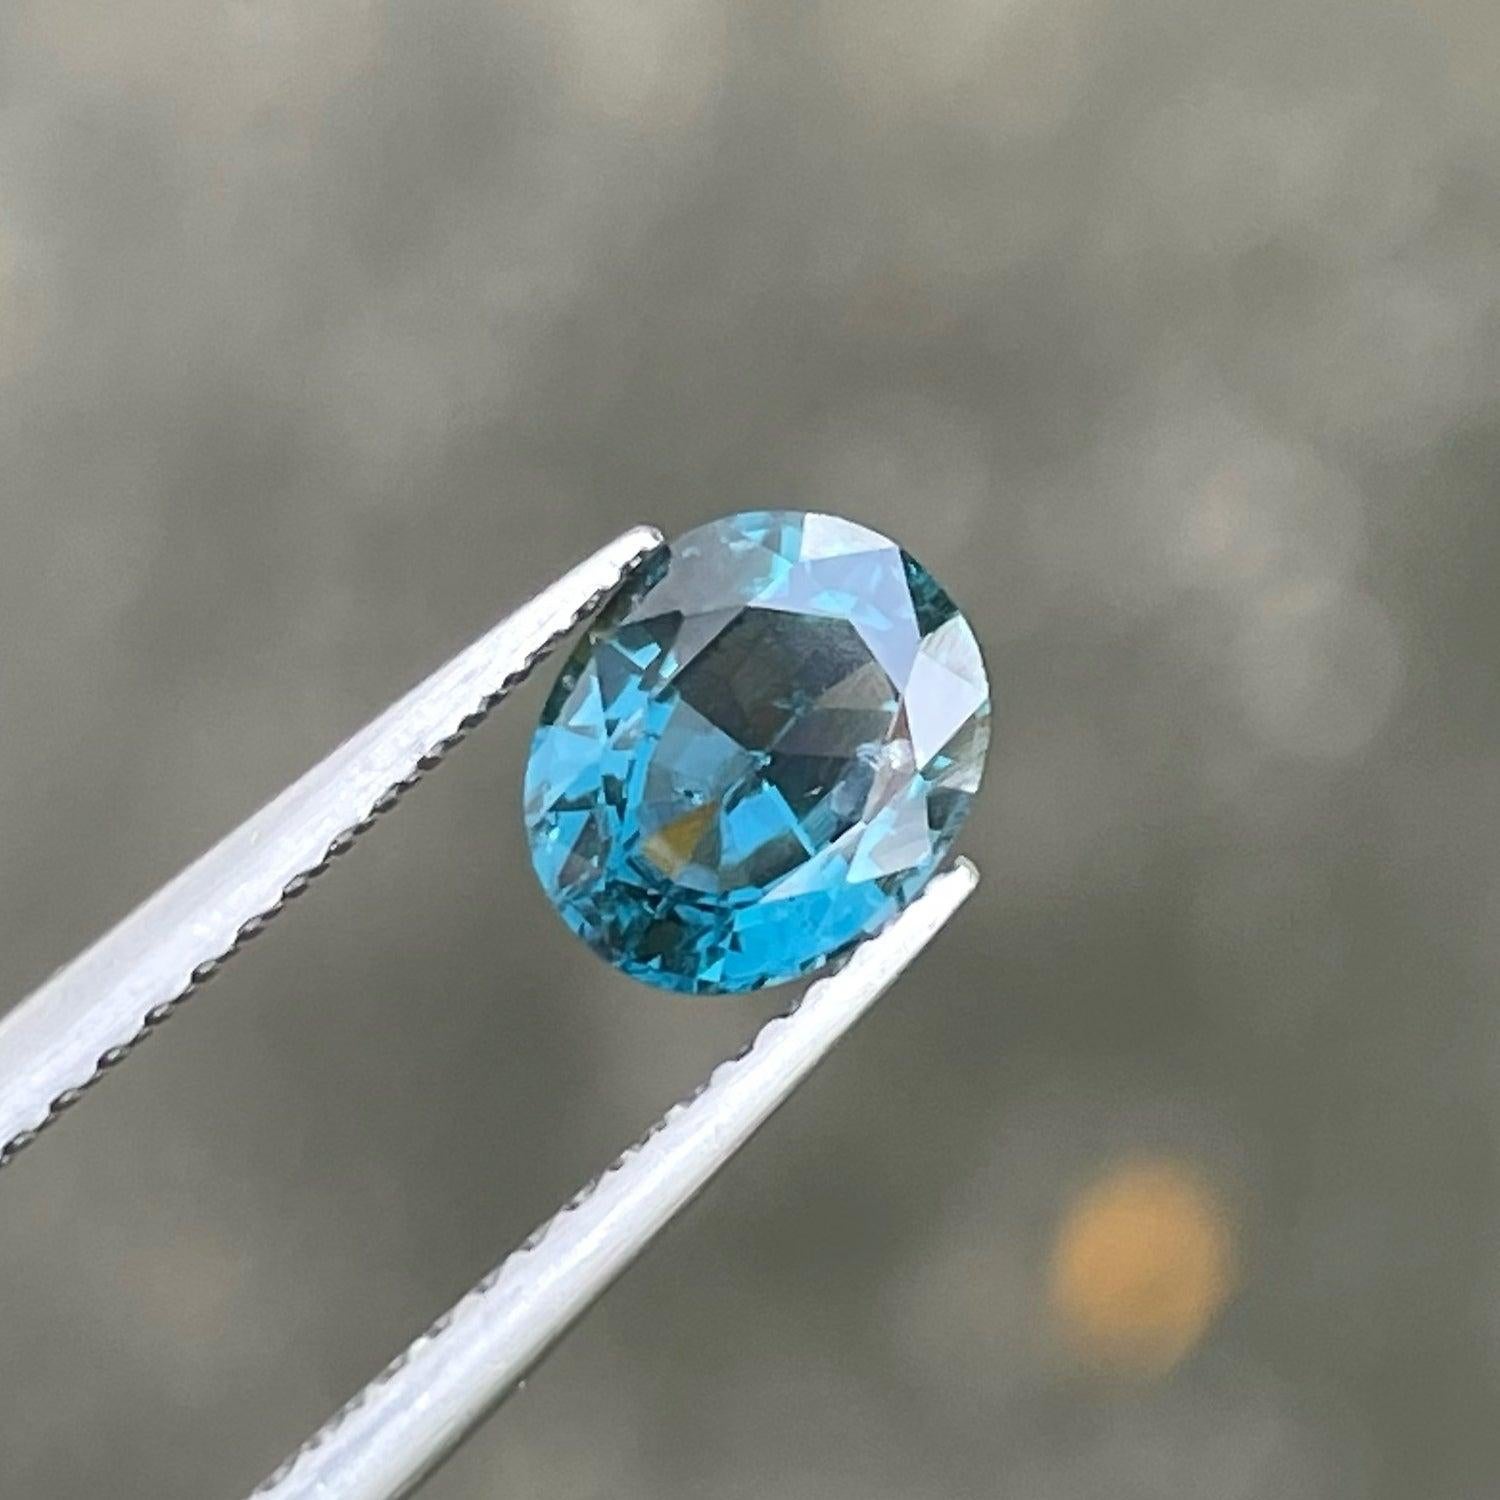 Joli spinelle naturel bleu cobalt de 1,22 carats en provenance du Sri Lanka, merveilleusement taillé en forme ovale, couleur bleue incroyable. Une grande brillance. Cette pierre précieuse est de pureté VVS.

Informations sur le produit :
TYPE DE